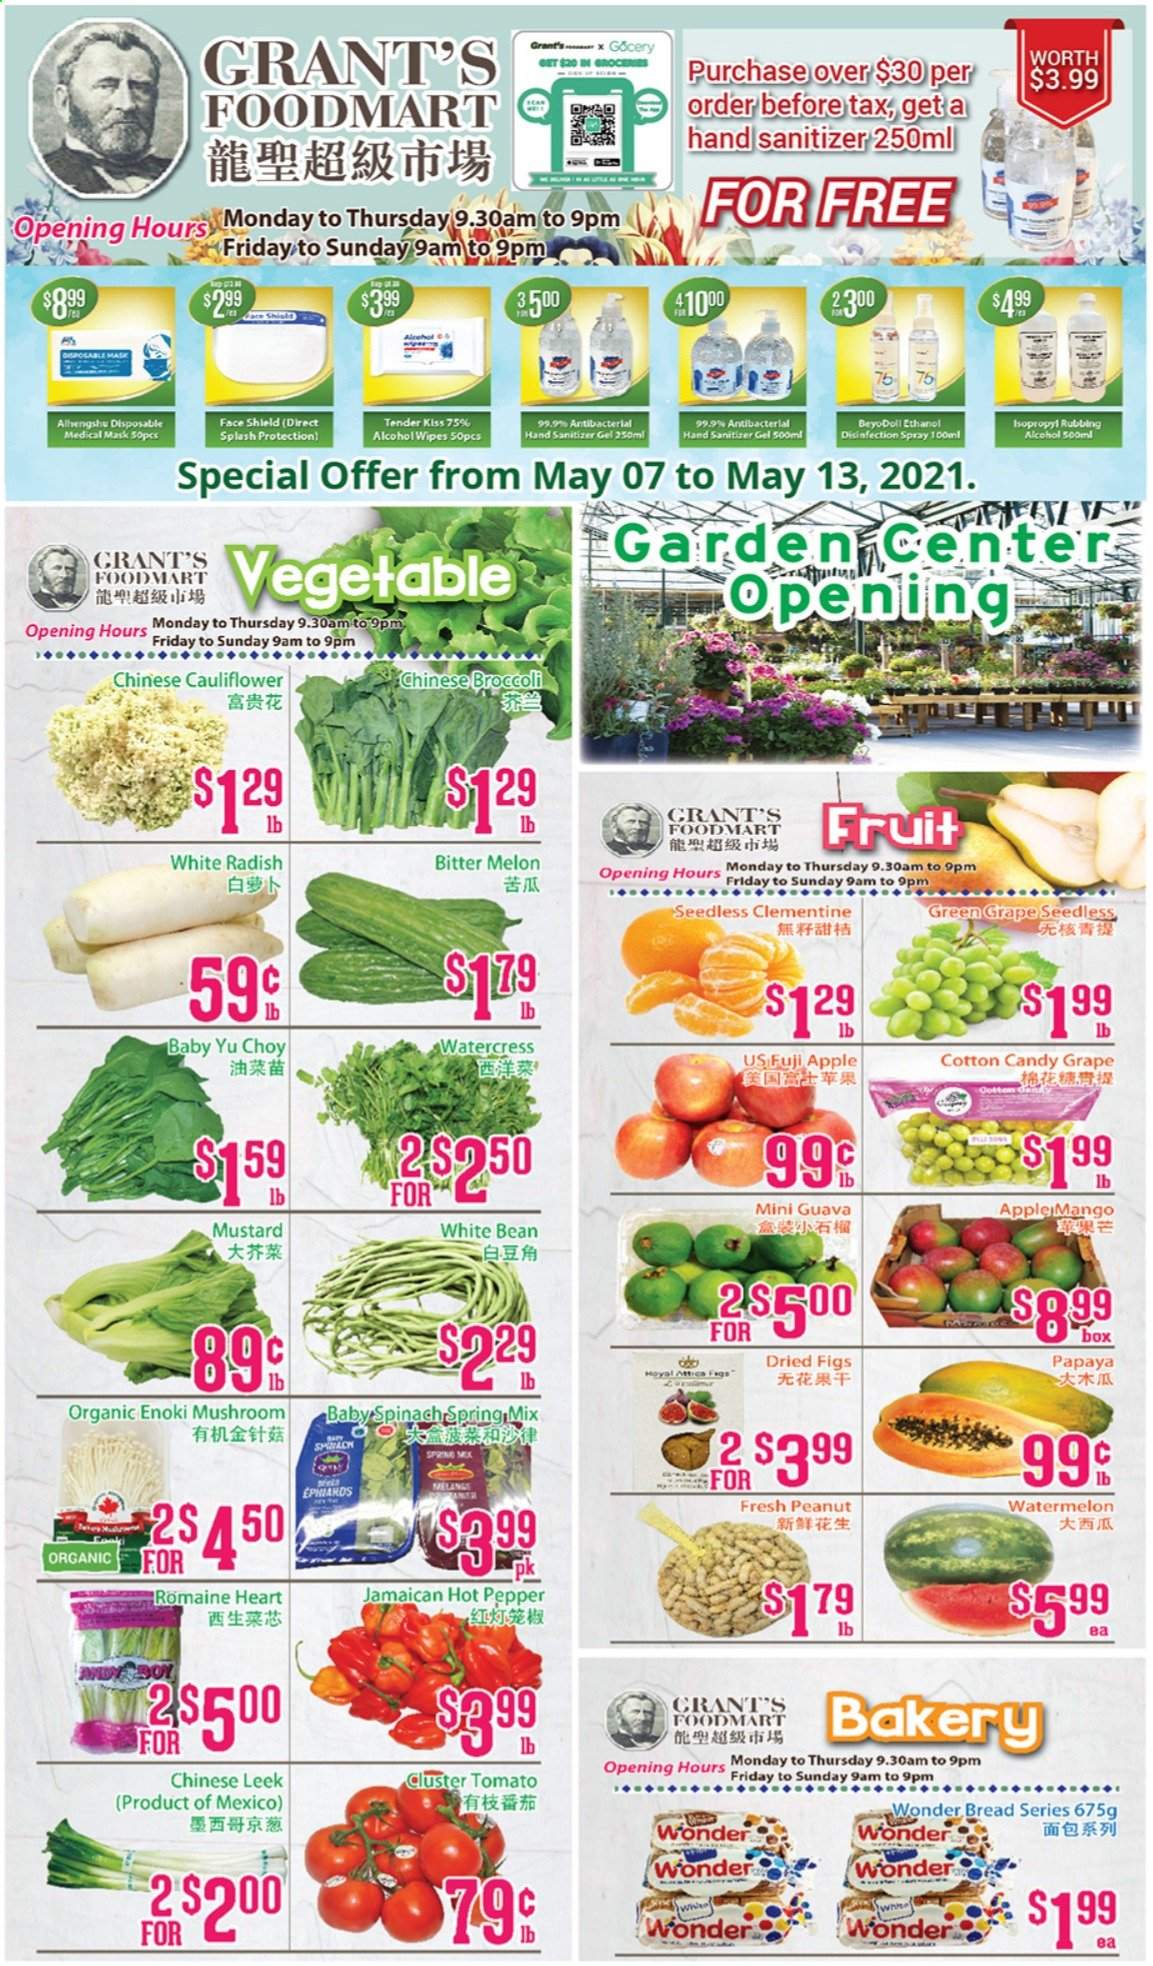 thumbnail - Circulaire Grant's Foodmart - 07 Mai 2021 - 13 Mai 2021 - Produits soldés - melon, clémentines. Page 1.